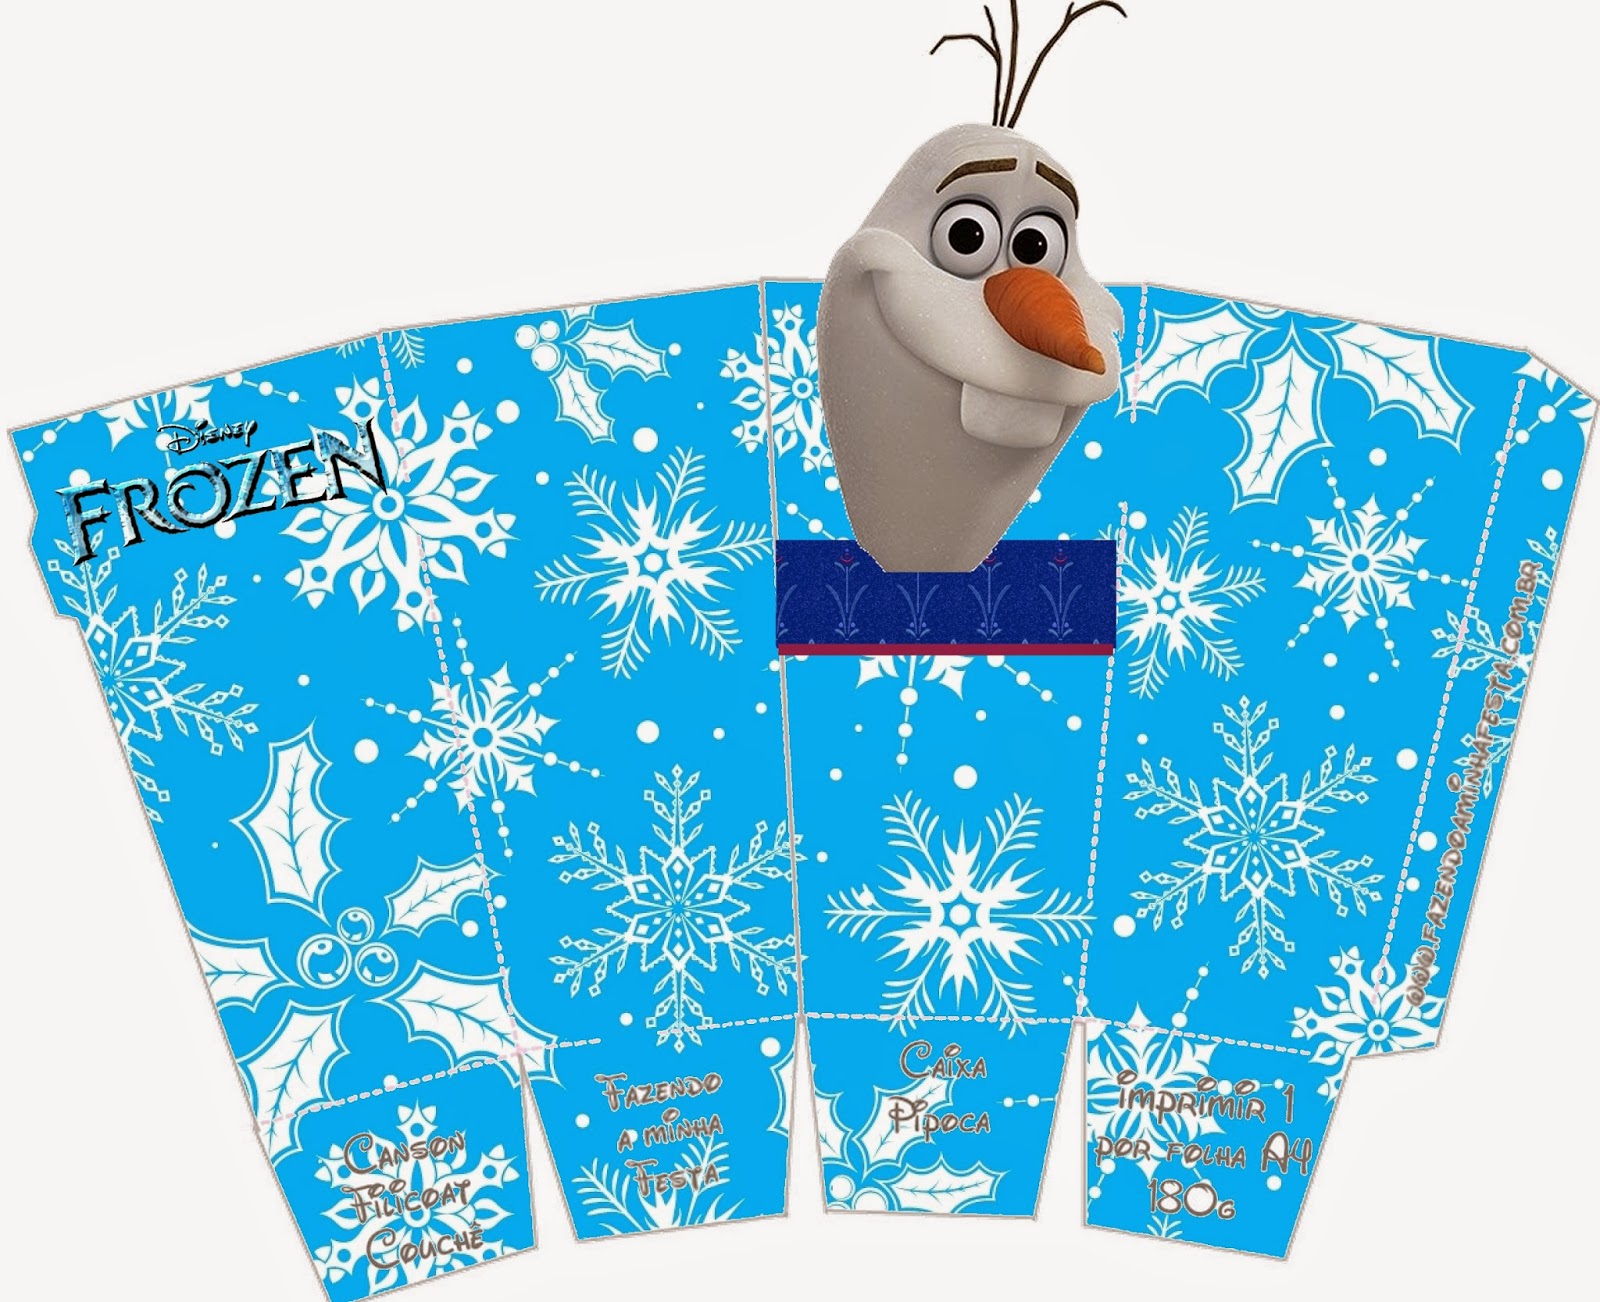 Frozen Olaff Free Printable PopCorn Boxes.